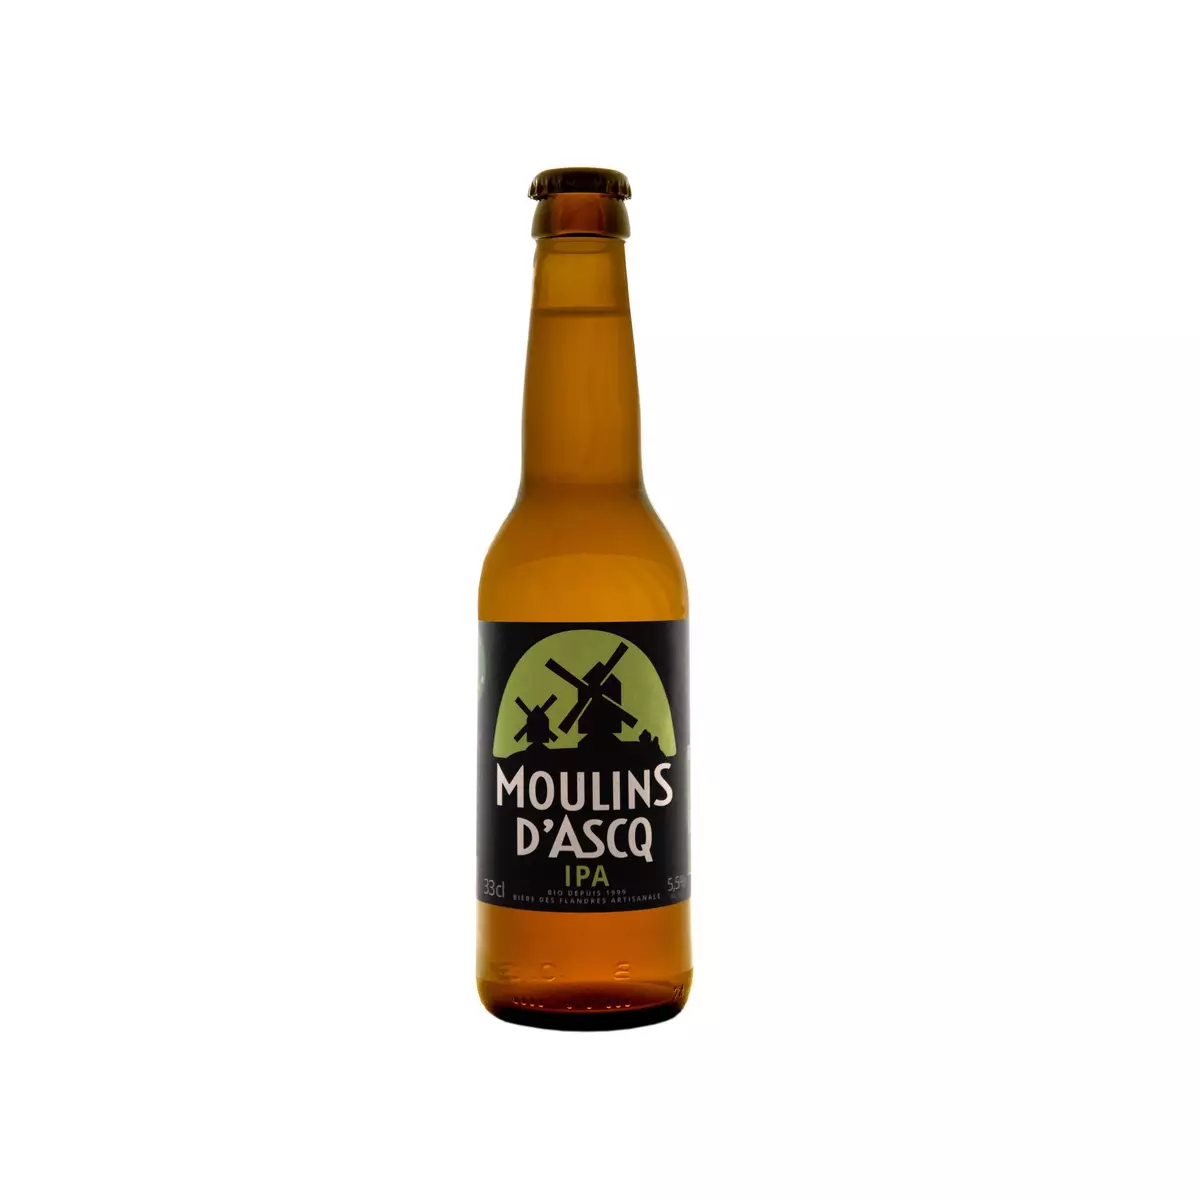 MOULINS D'ASCQ Bière blonde IPA 5.5% bio 33cl